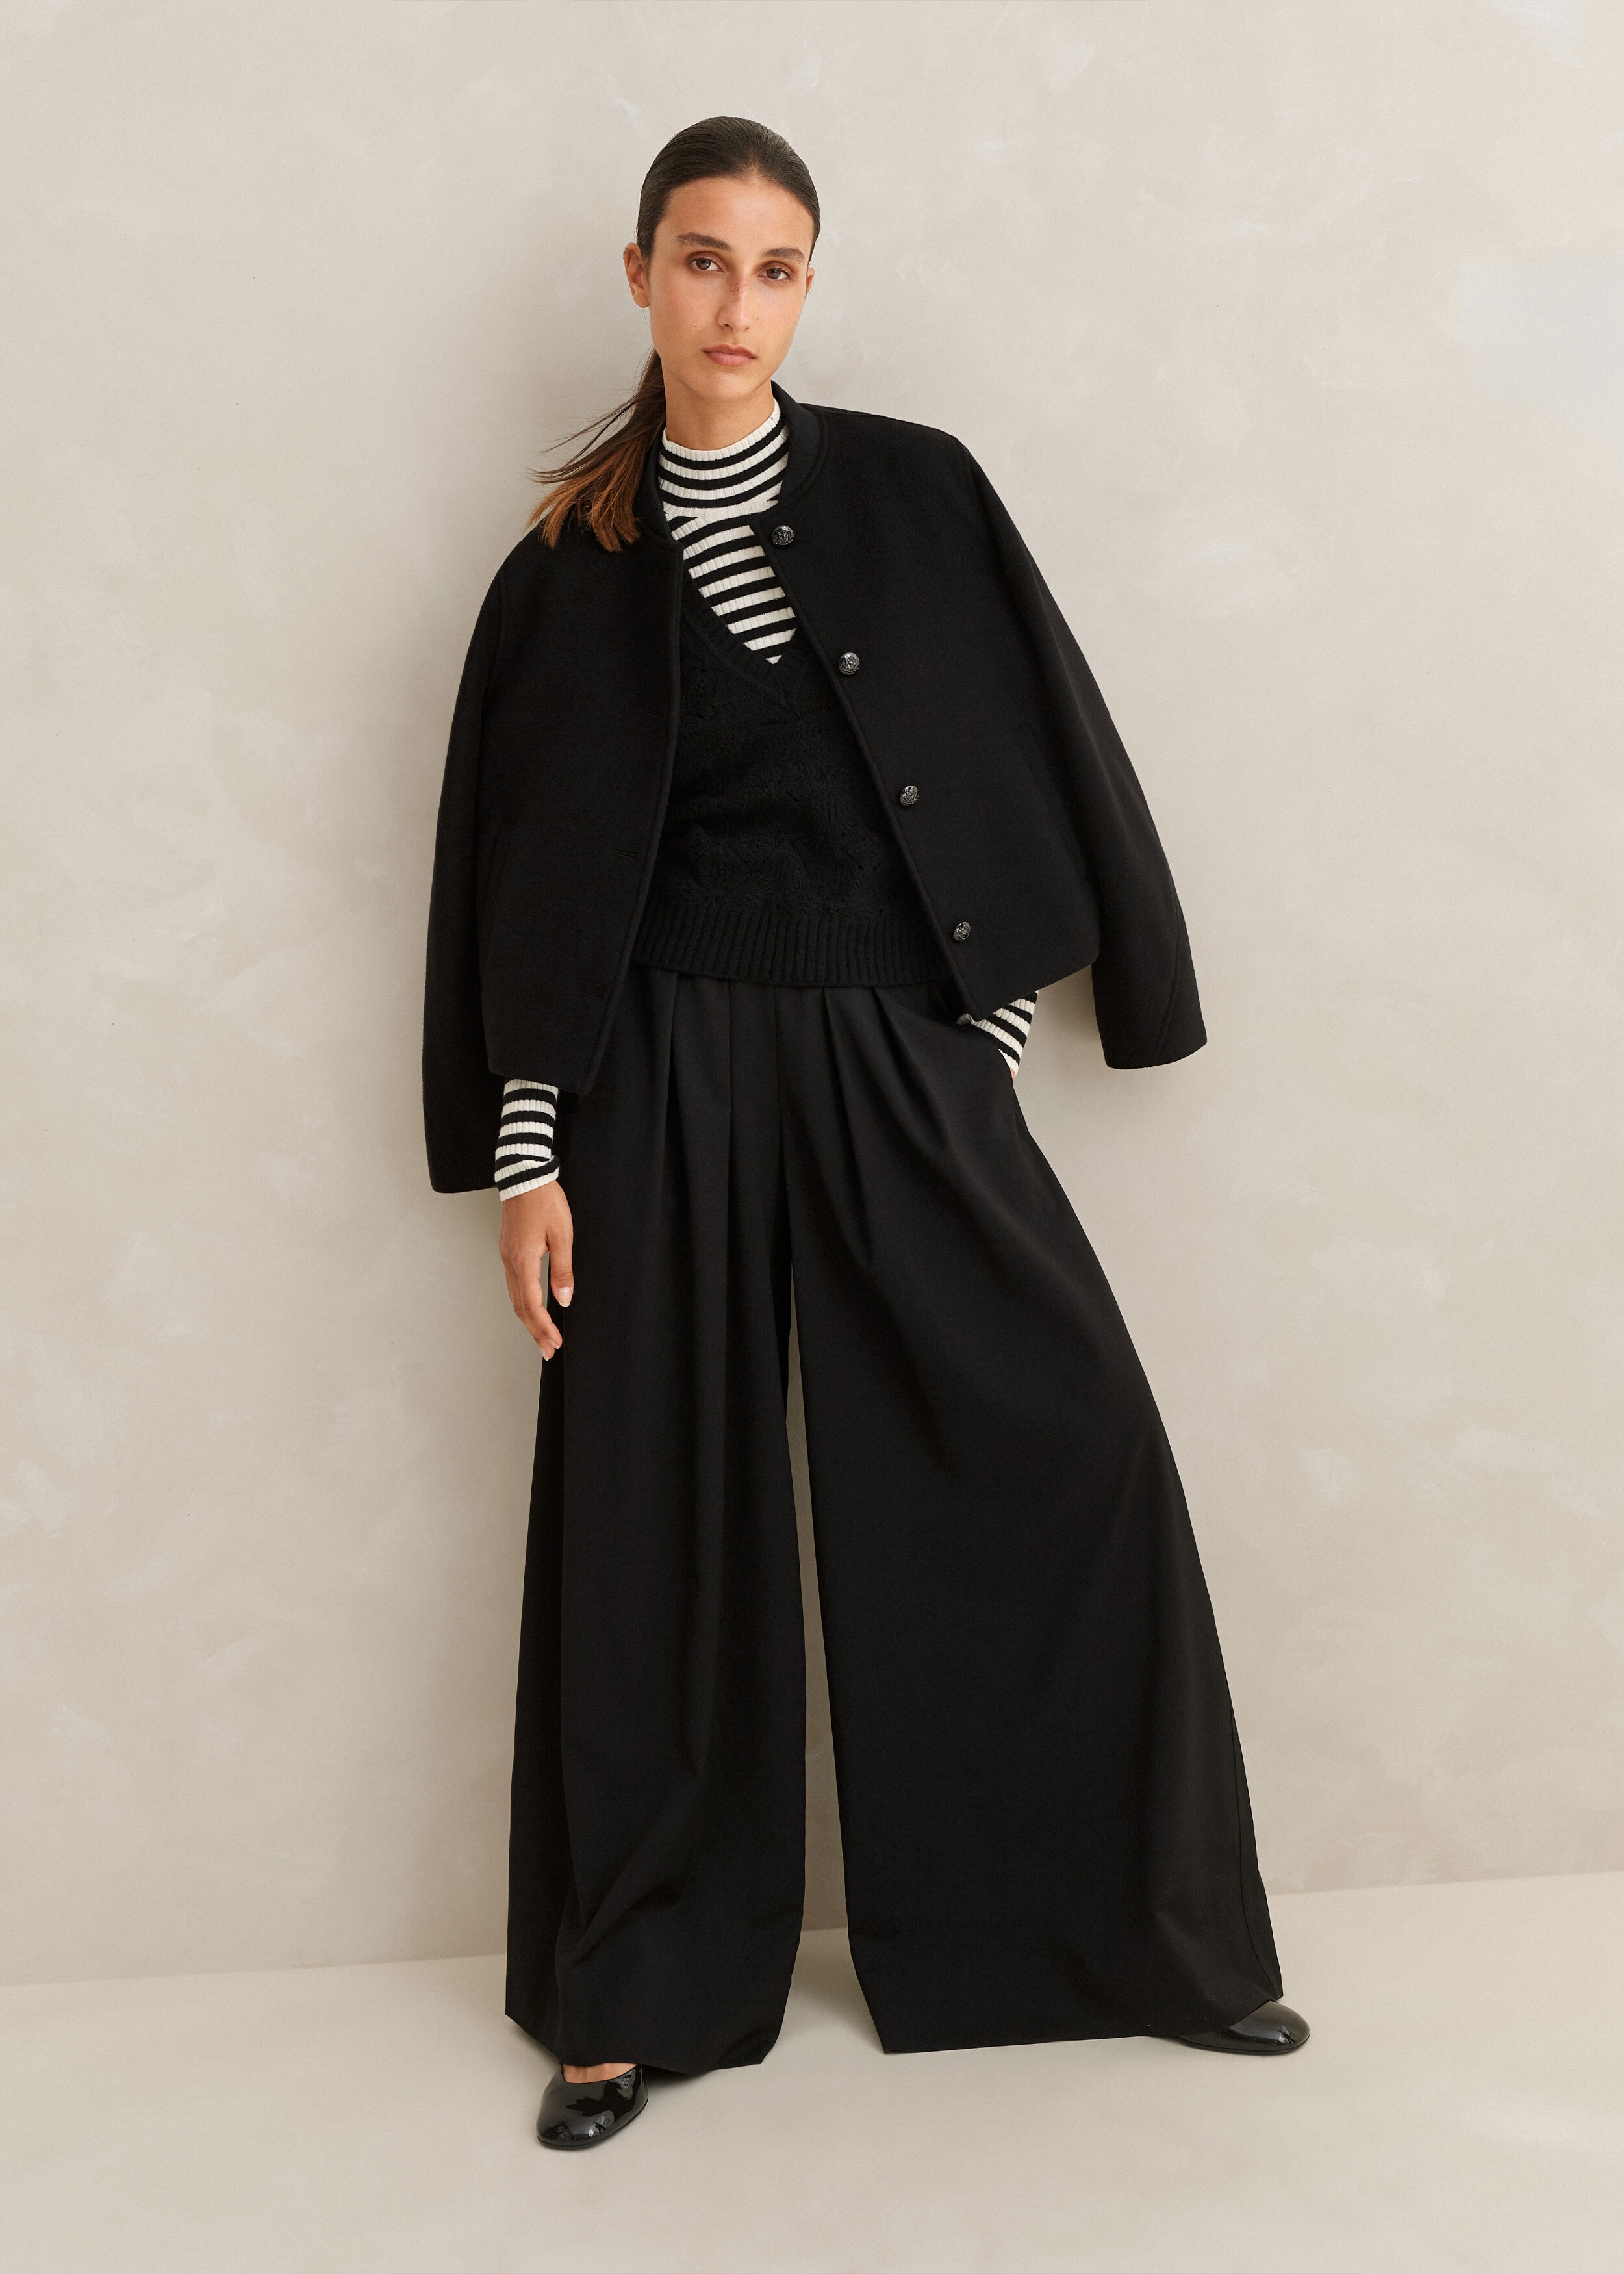 Women's Designer Coats & Jackets - Luxury & Stylish | ME+EM